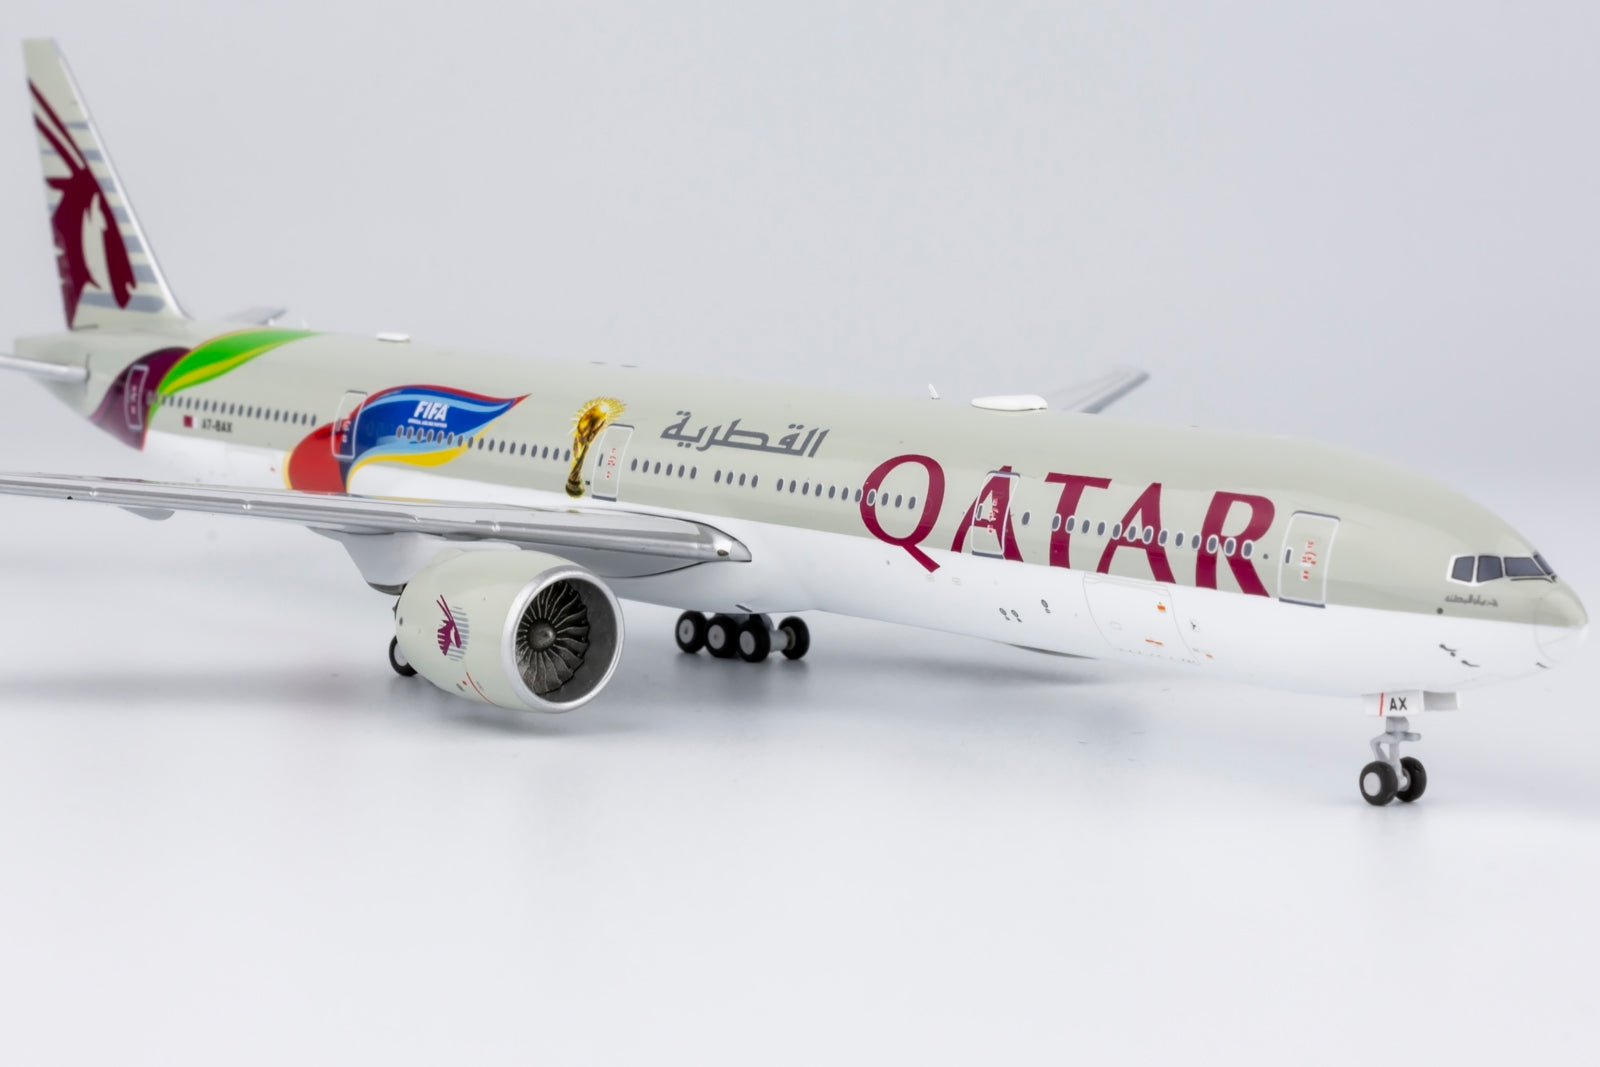 1/400 Qatar Airways B 777-300ER A7-BAX 